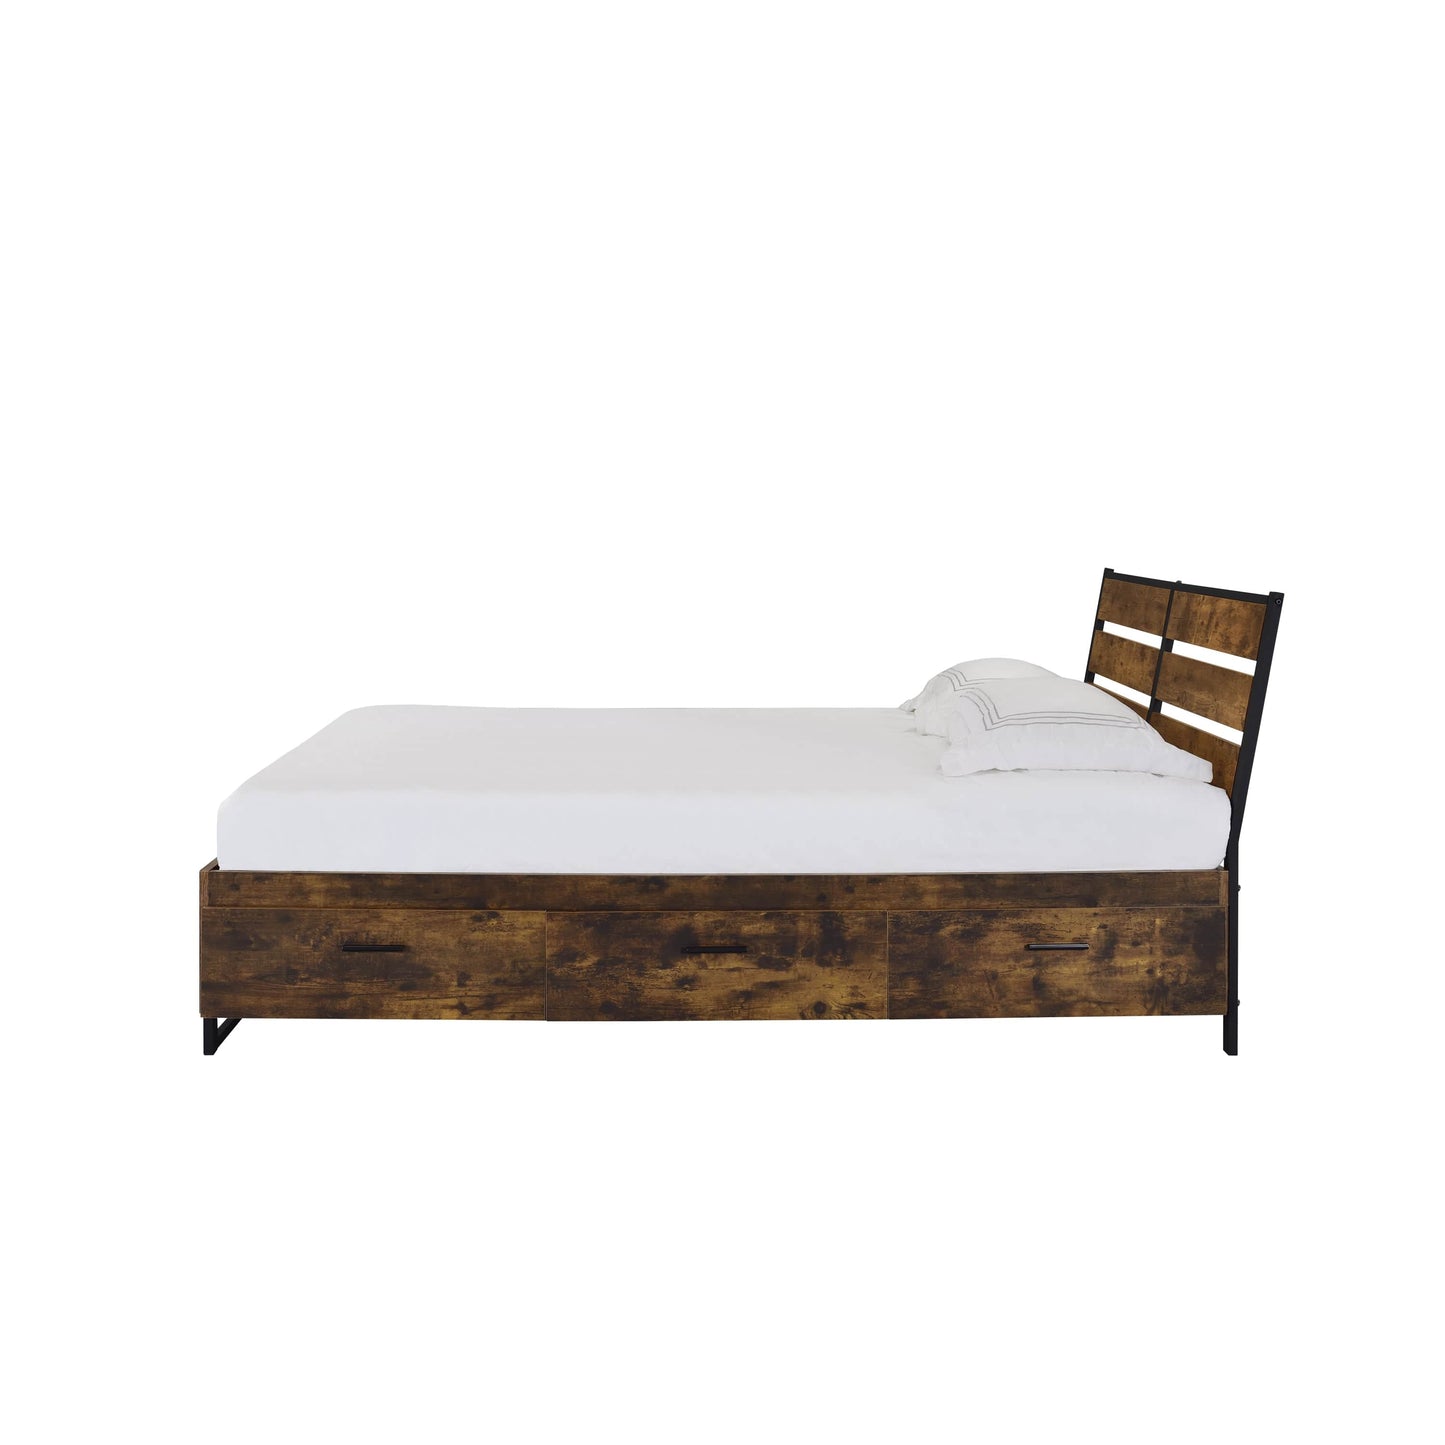 ACME Juvanth Queen Bed W/Storage in Rustic Oak & Black Finish 24260Q